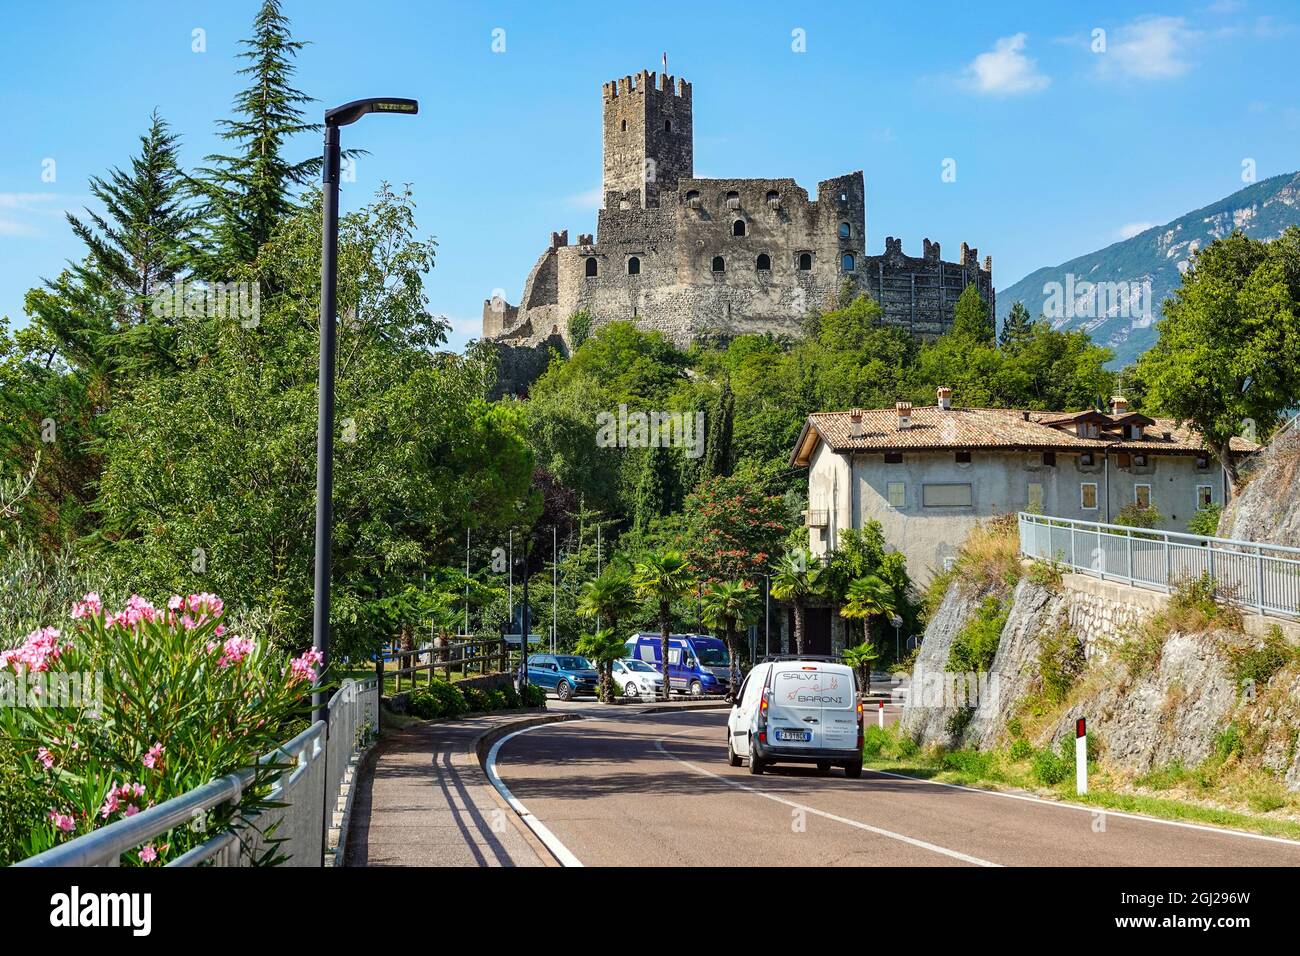 The Castillo di Drena, Drena Castle, Trento, Italian Lakes, Italy Stock Photo